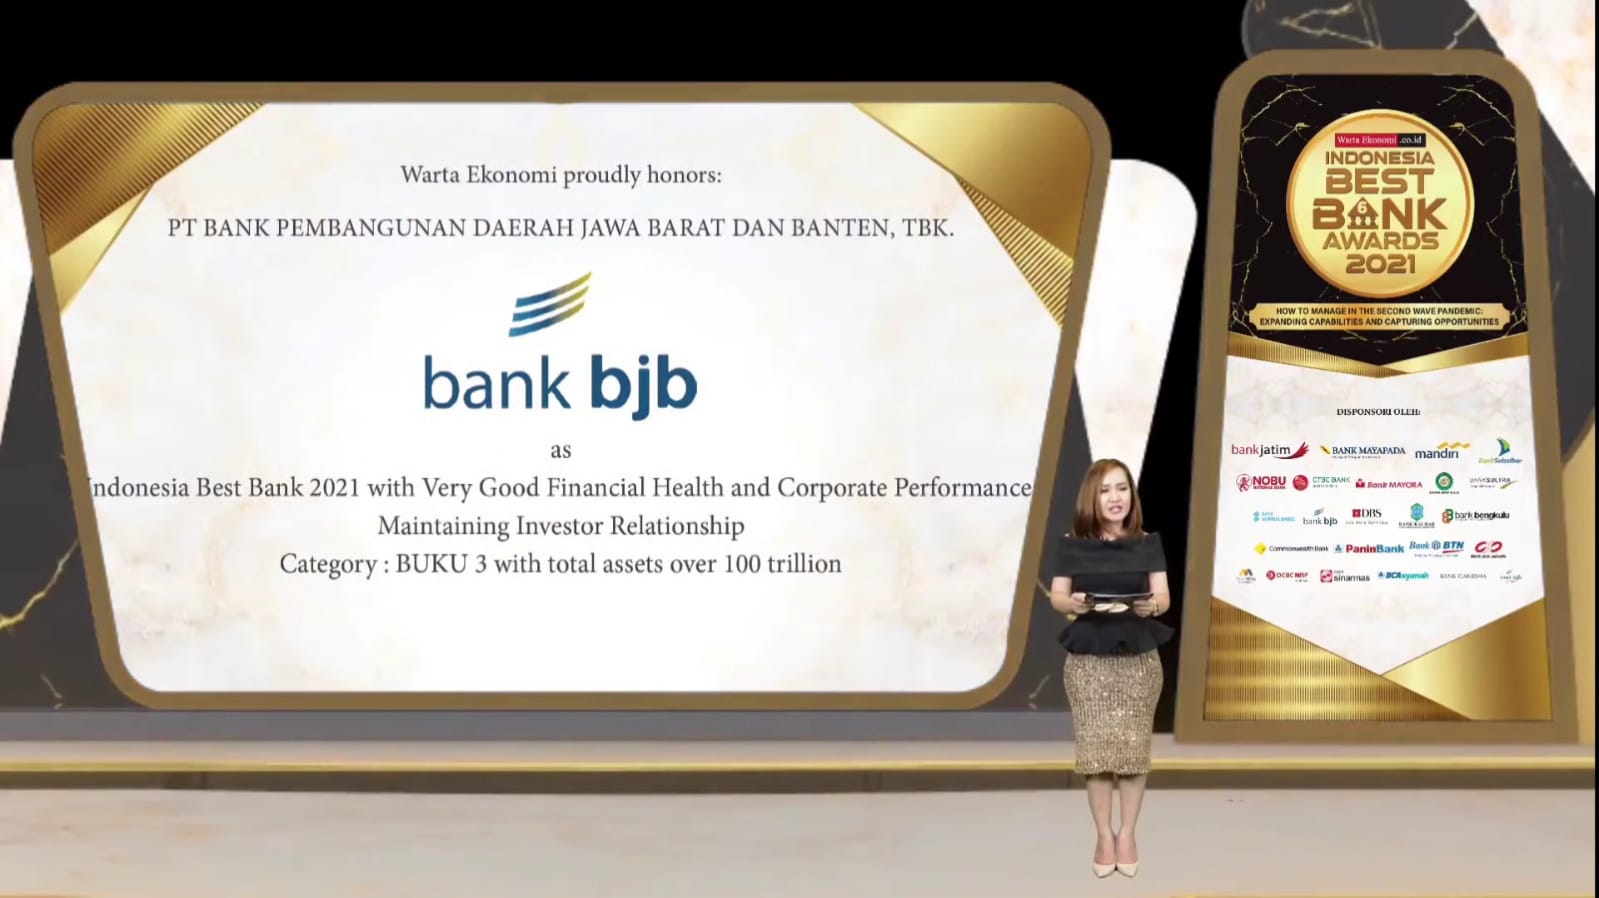  bank bjb Raih Penghargaan dari Warta Ekonomi Indonesia Best Bank 2021